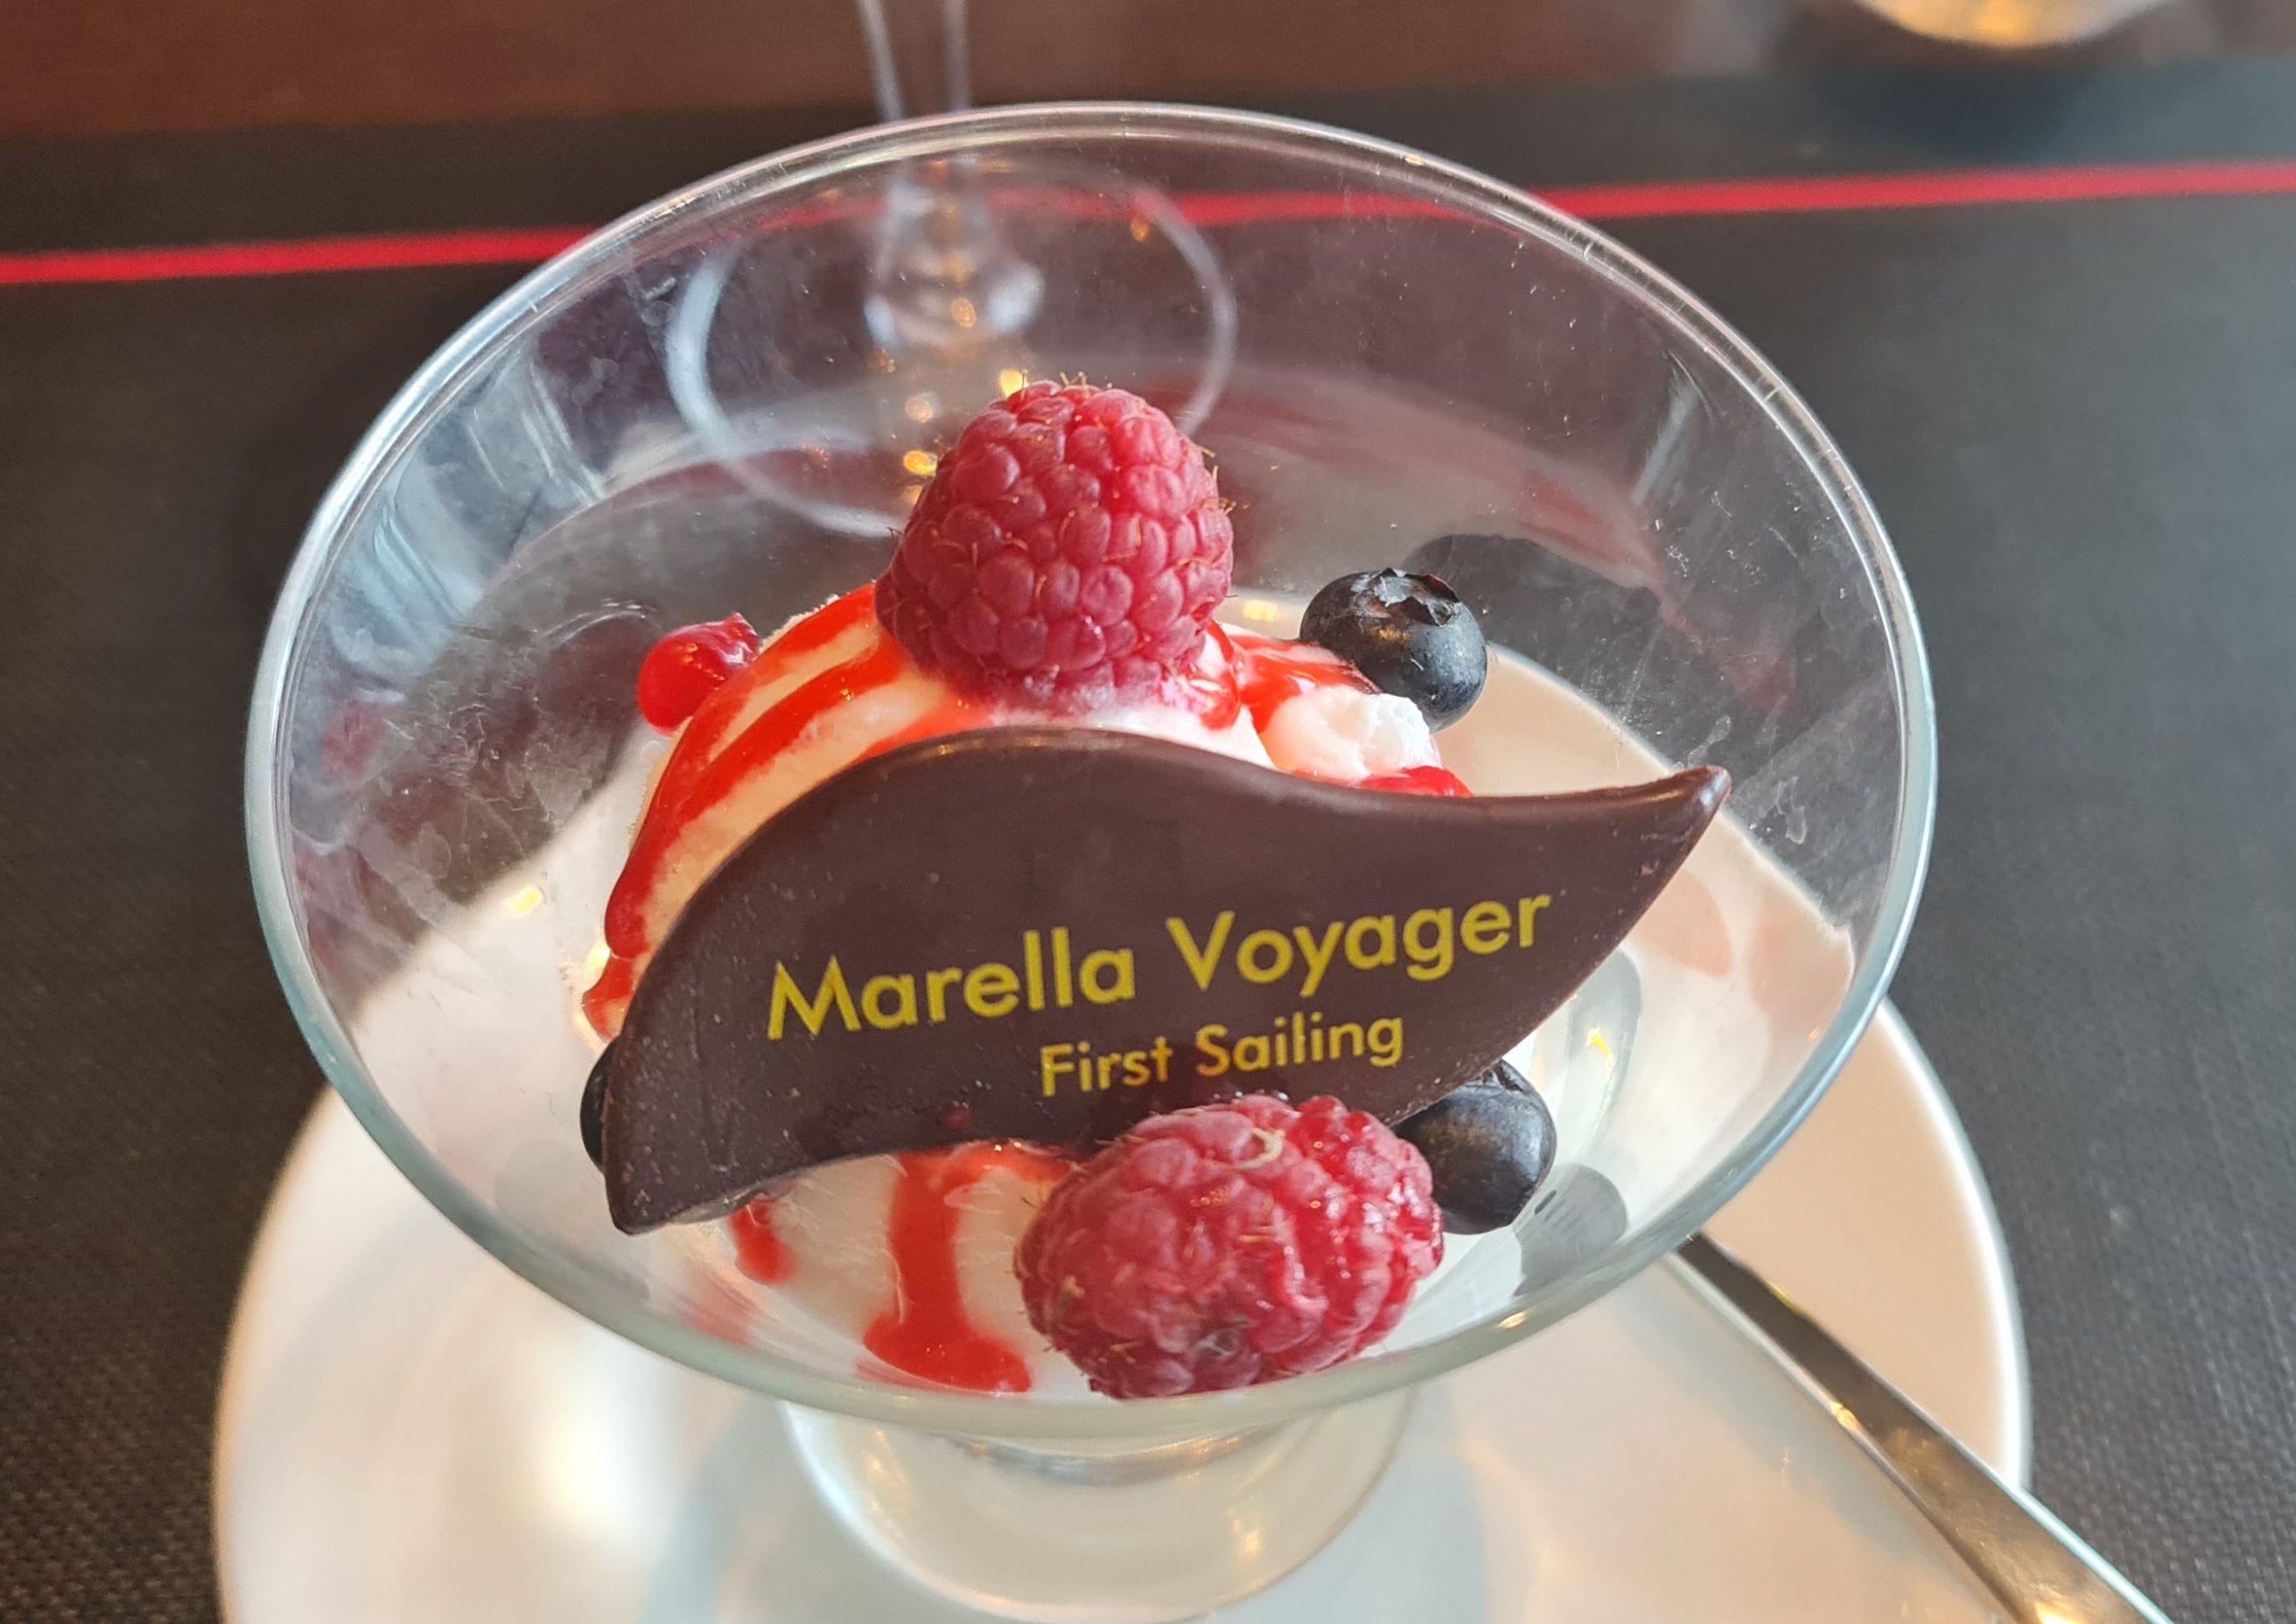 Surf & Turf dessert Marella Voyager